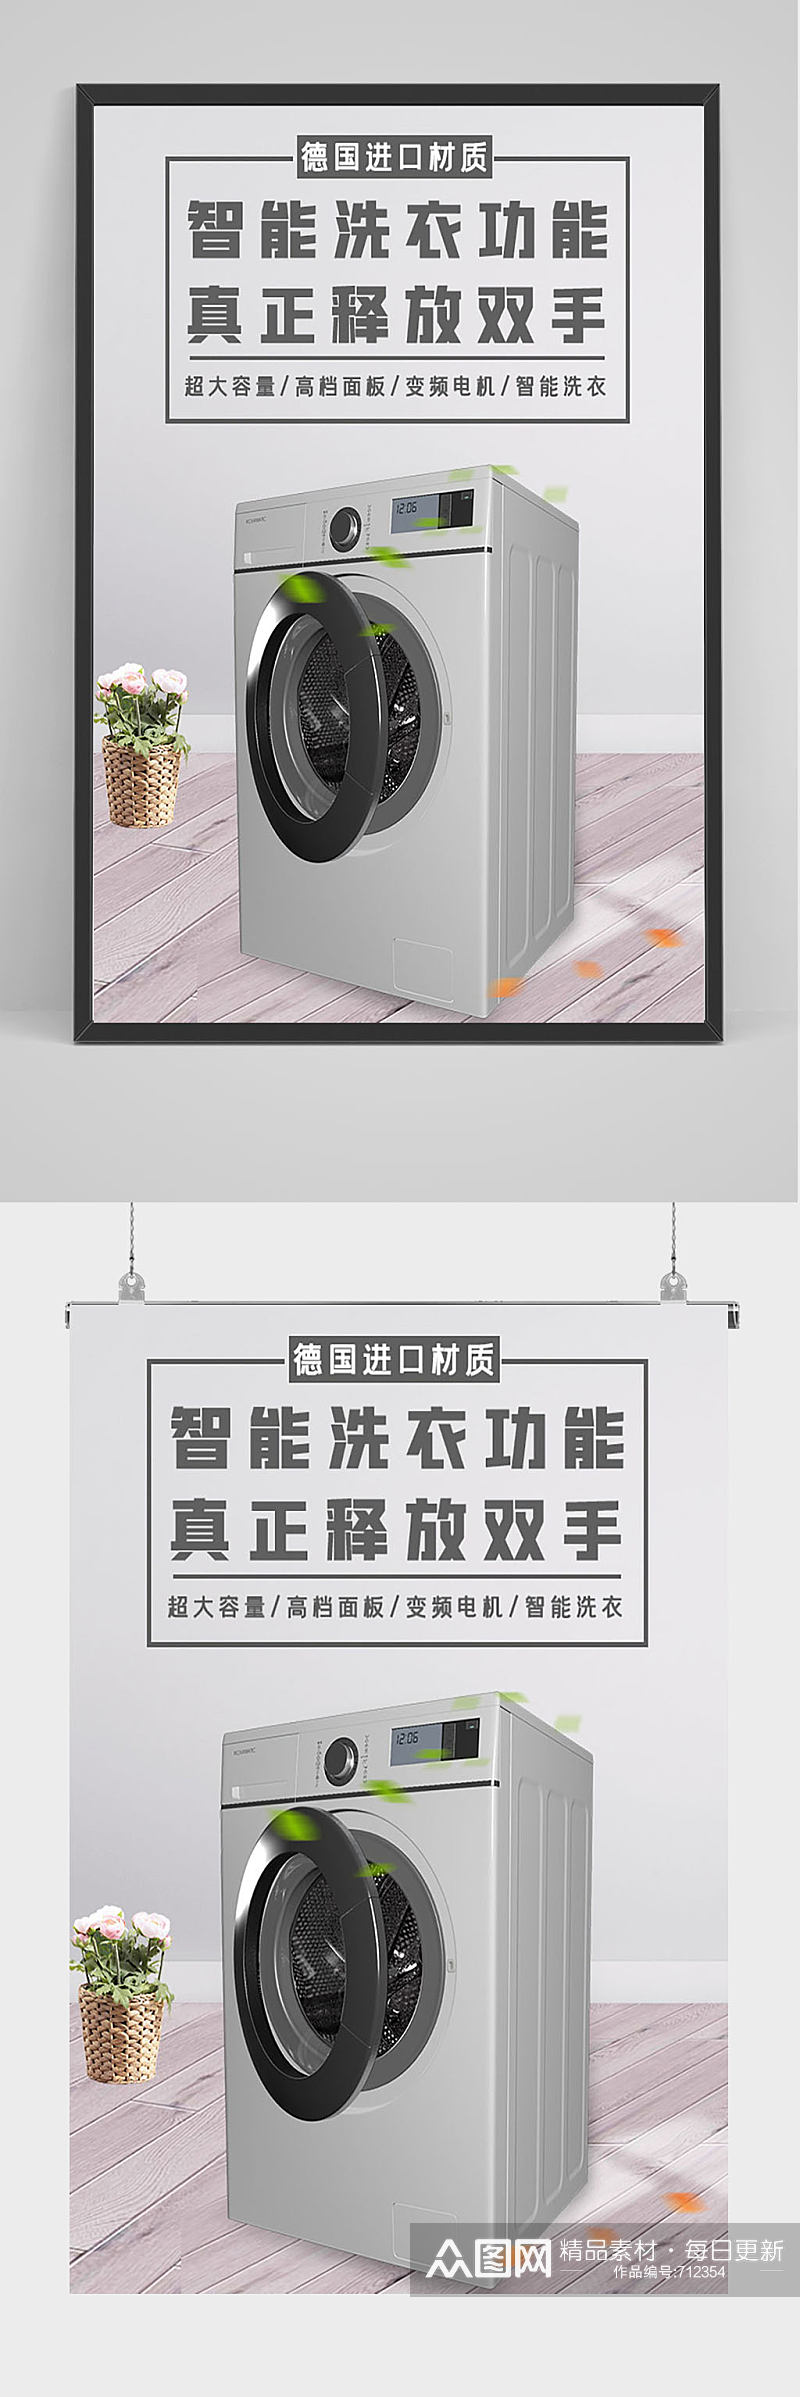 精品洗衣机促销海报设计素材